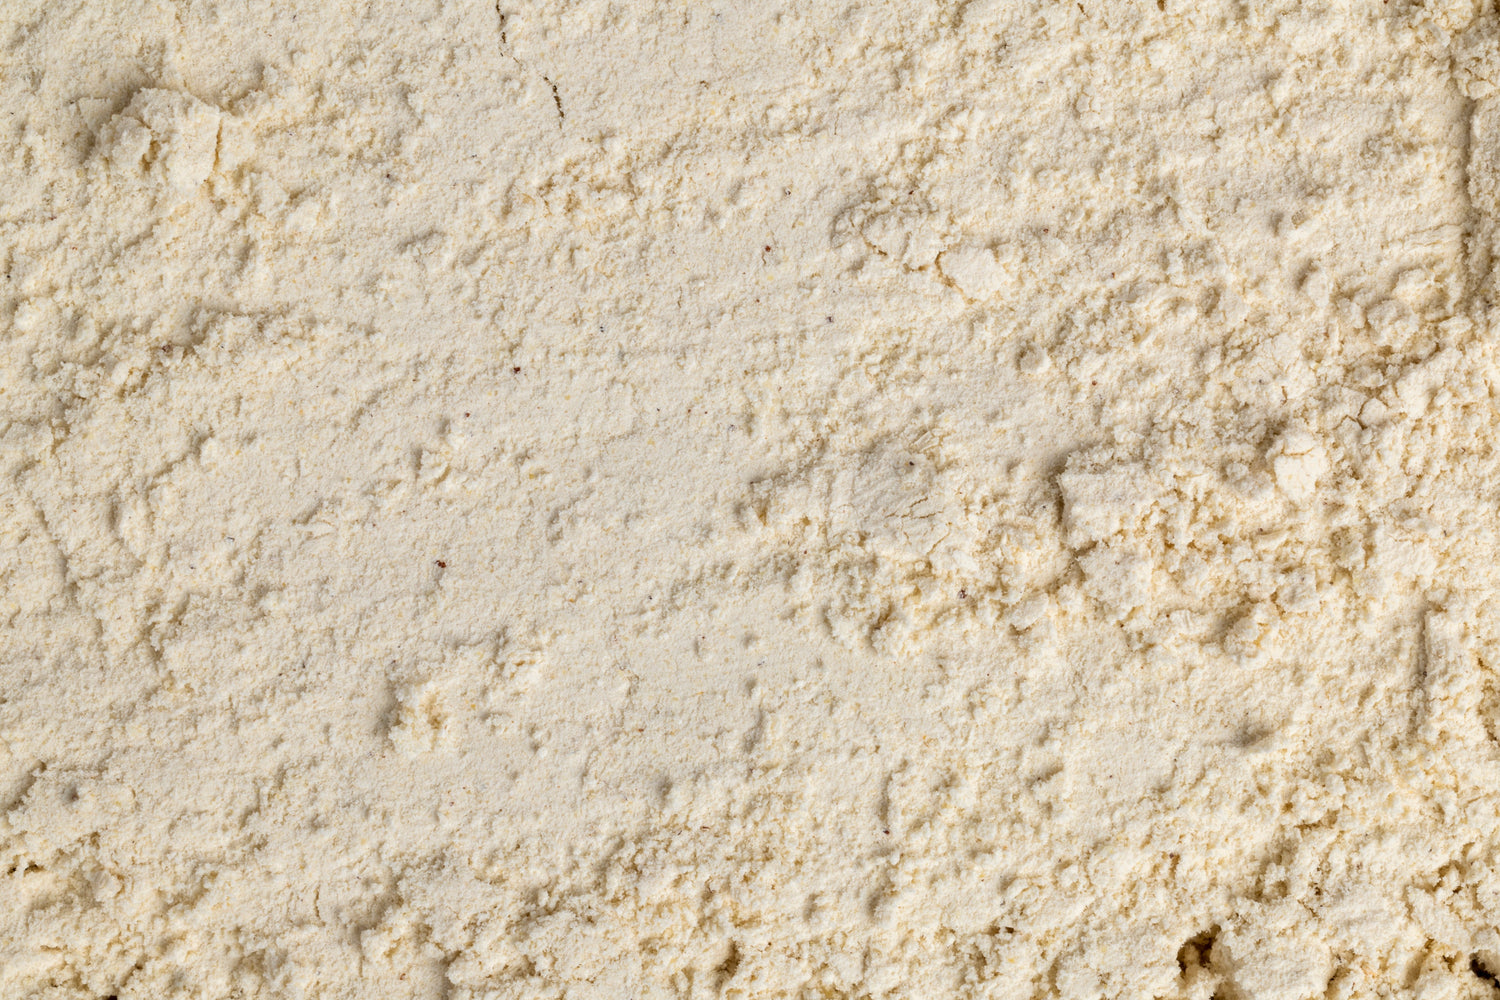 Foxtail Millet Flour / कांगणी